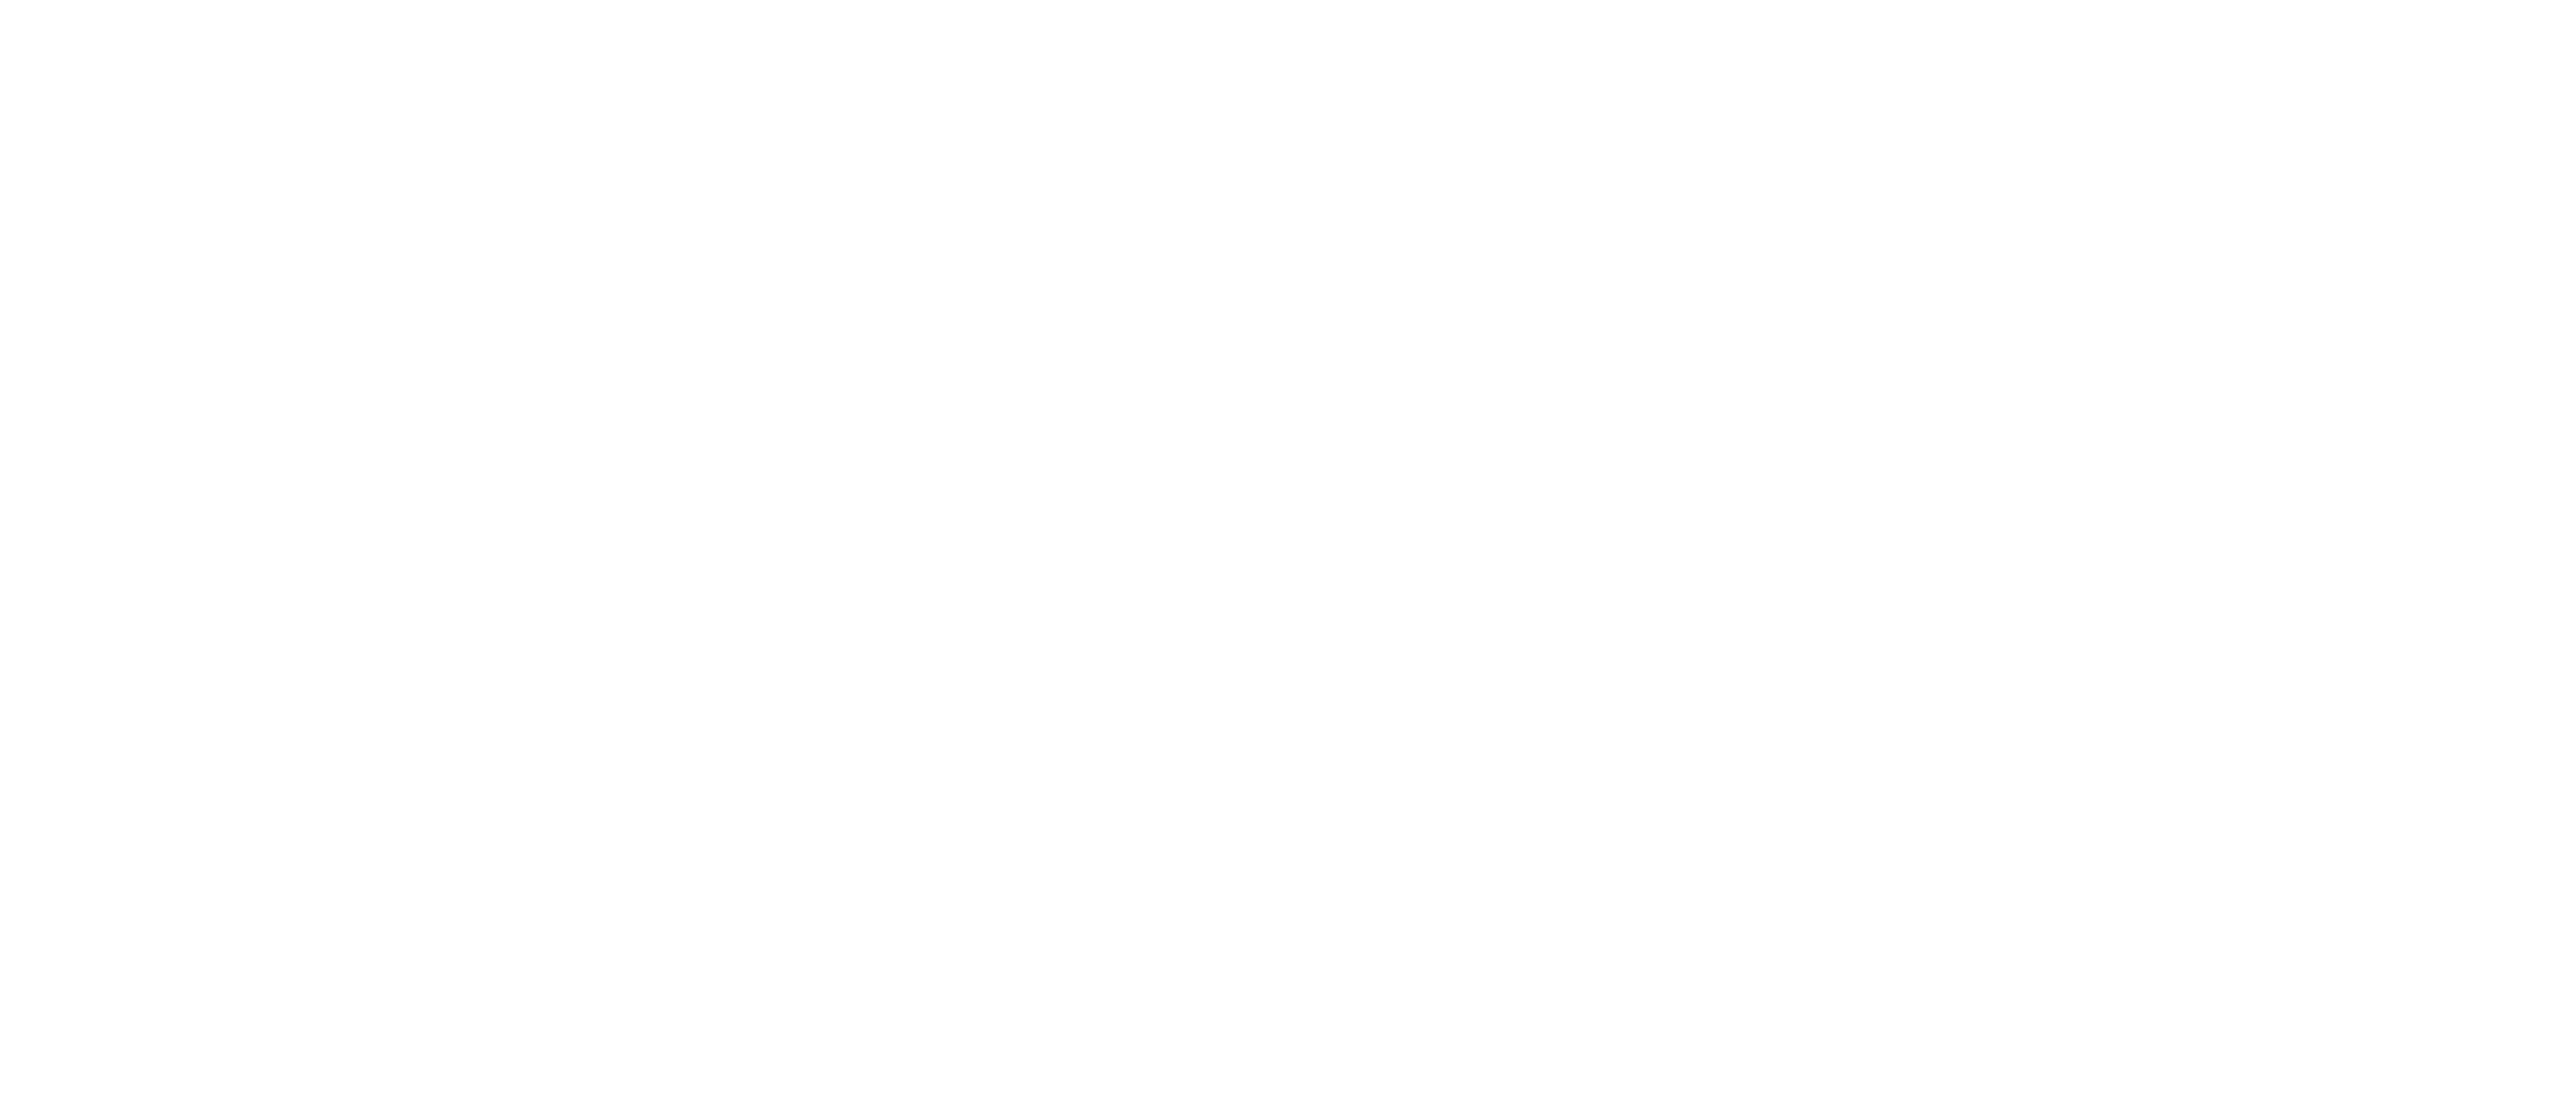 Fairmont logo